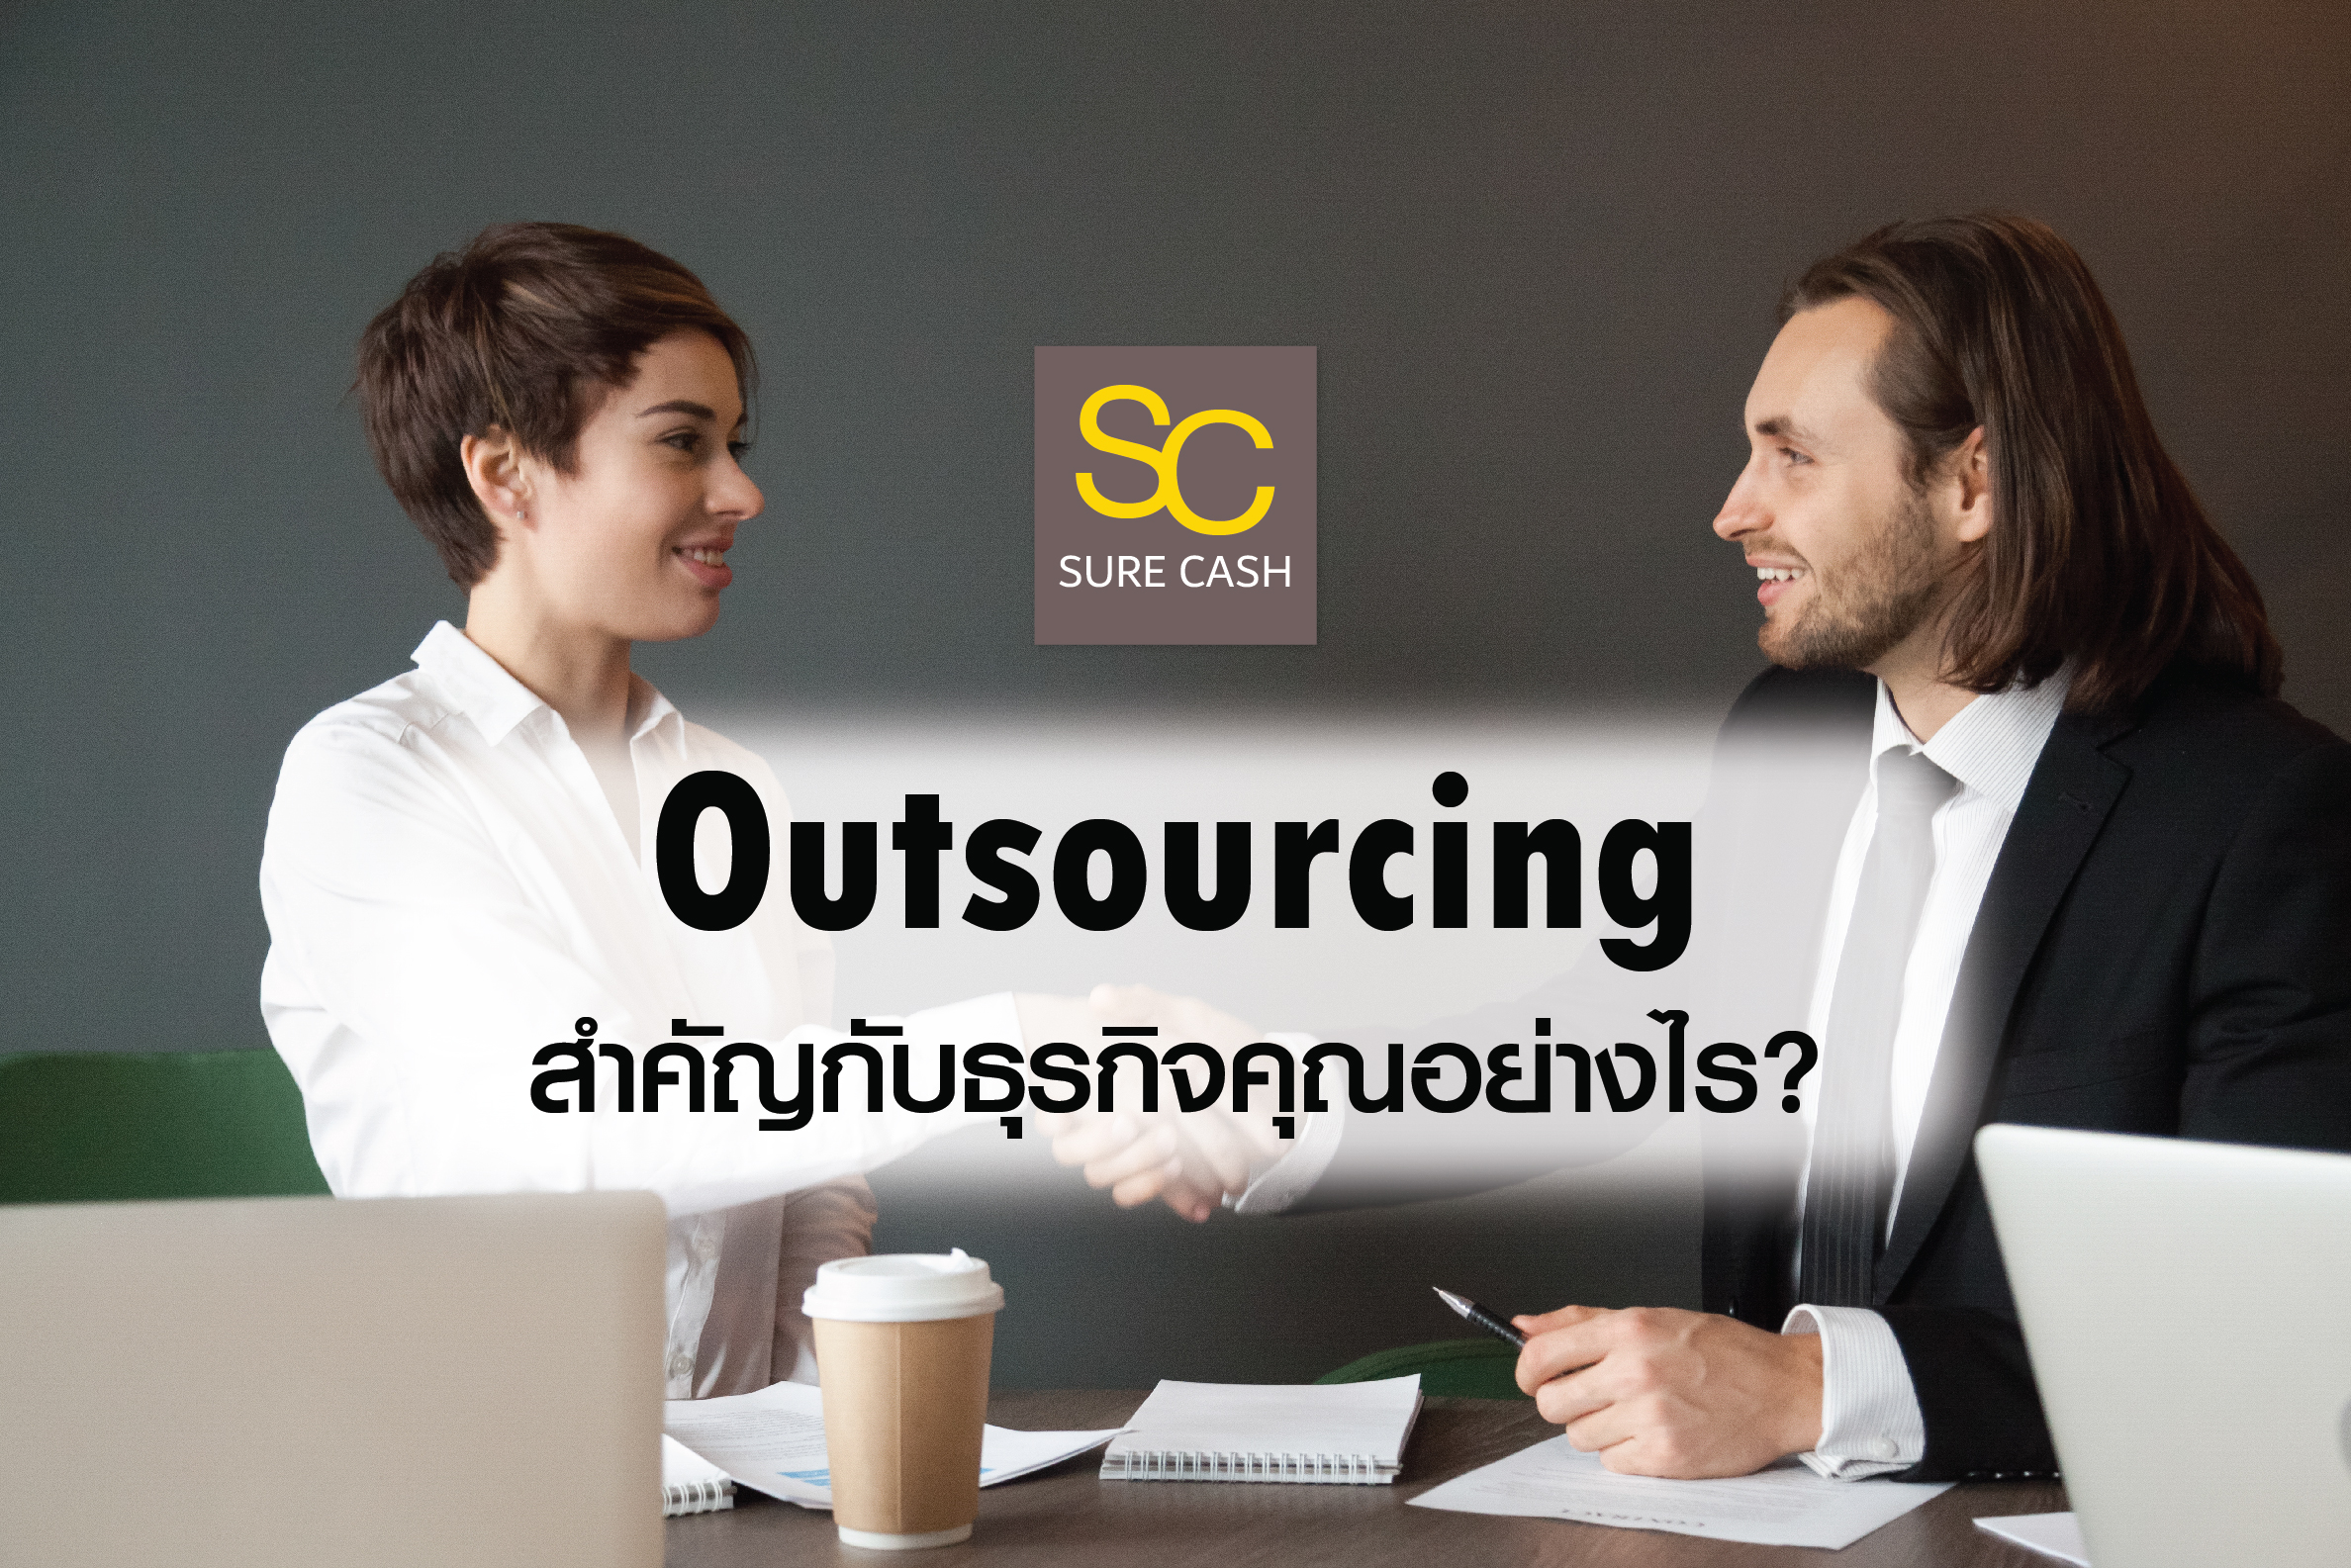 Outsourcing สำคัญกับธุรกิจคุณอย่างไร?